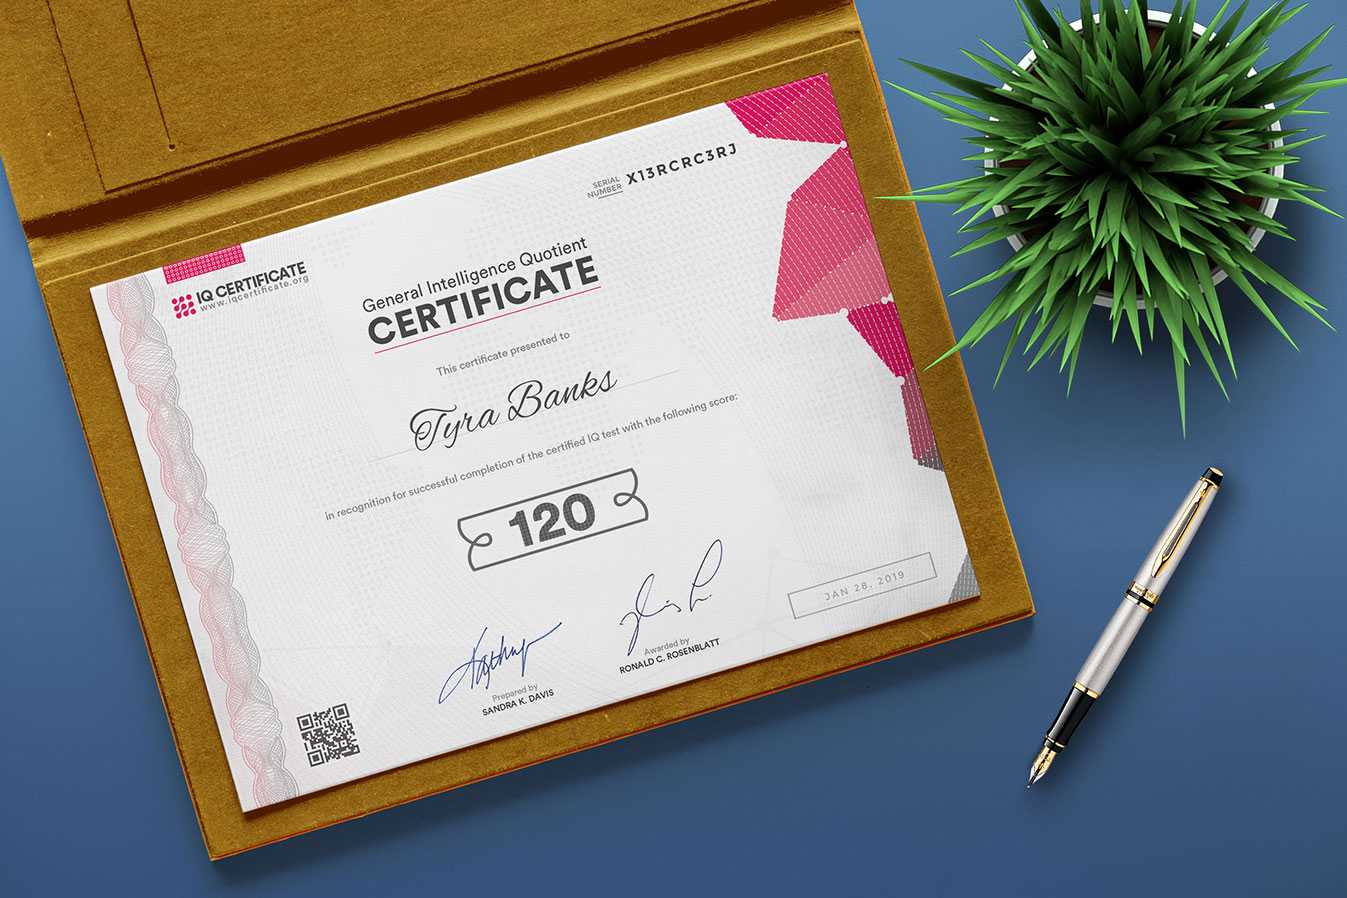 Sample Iq Certificate – Get Your Iq Certificate! For Iq Certificate Template